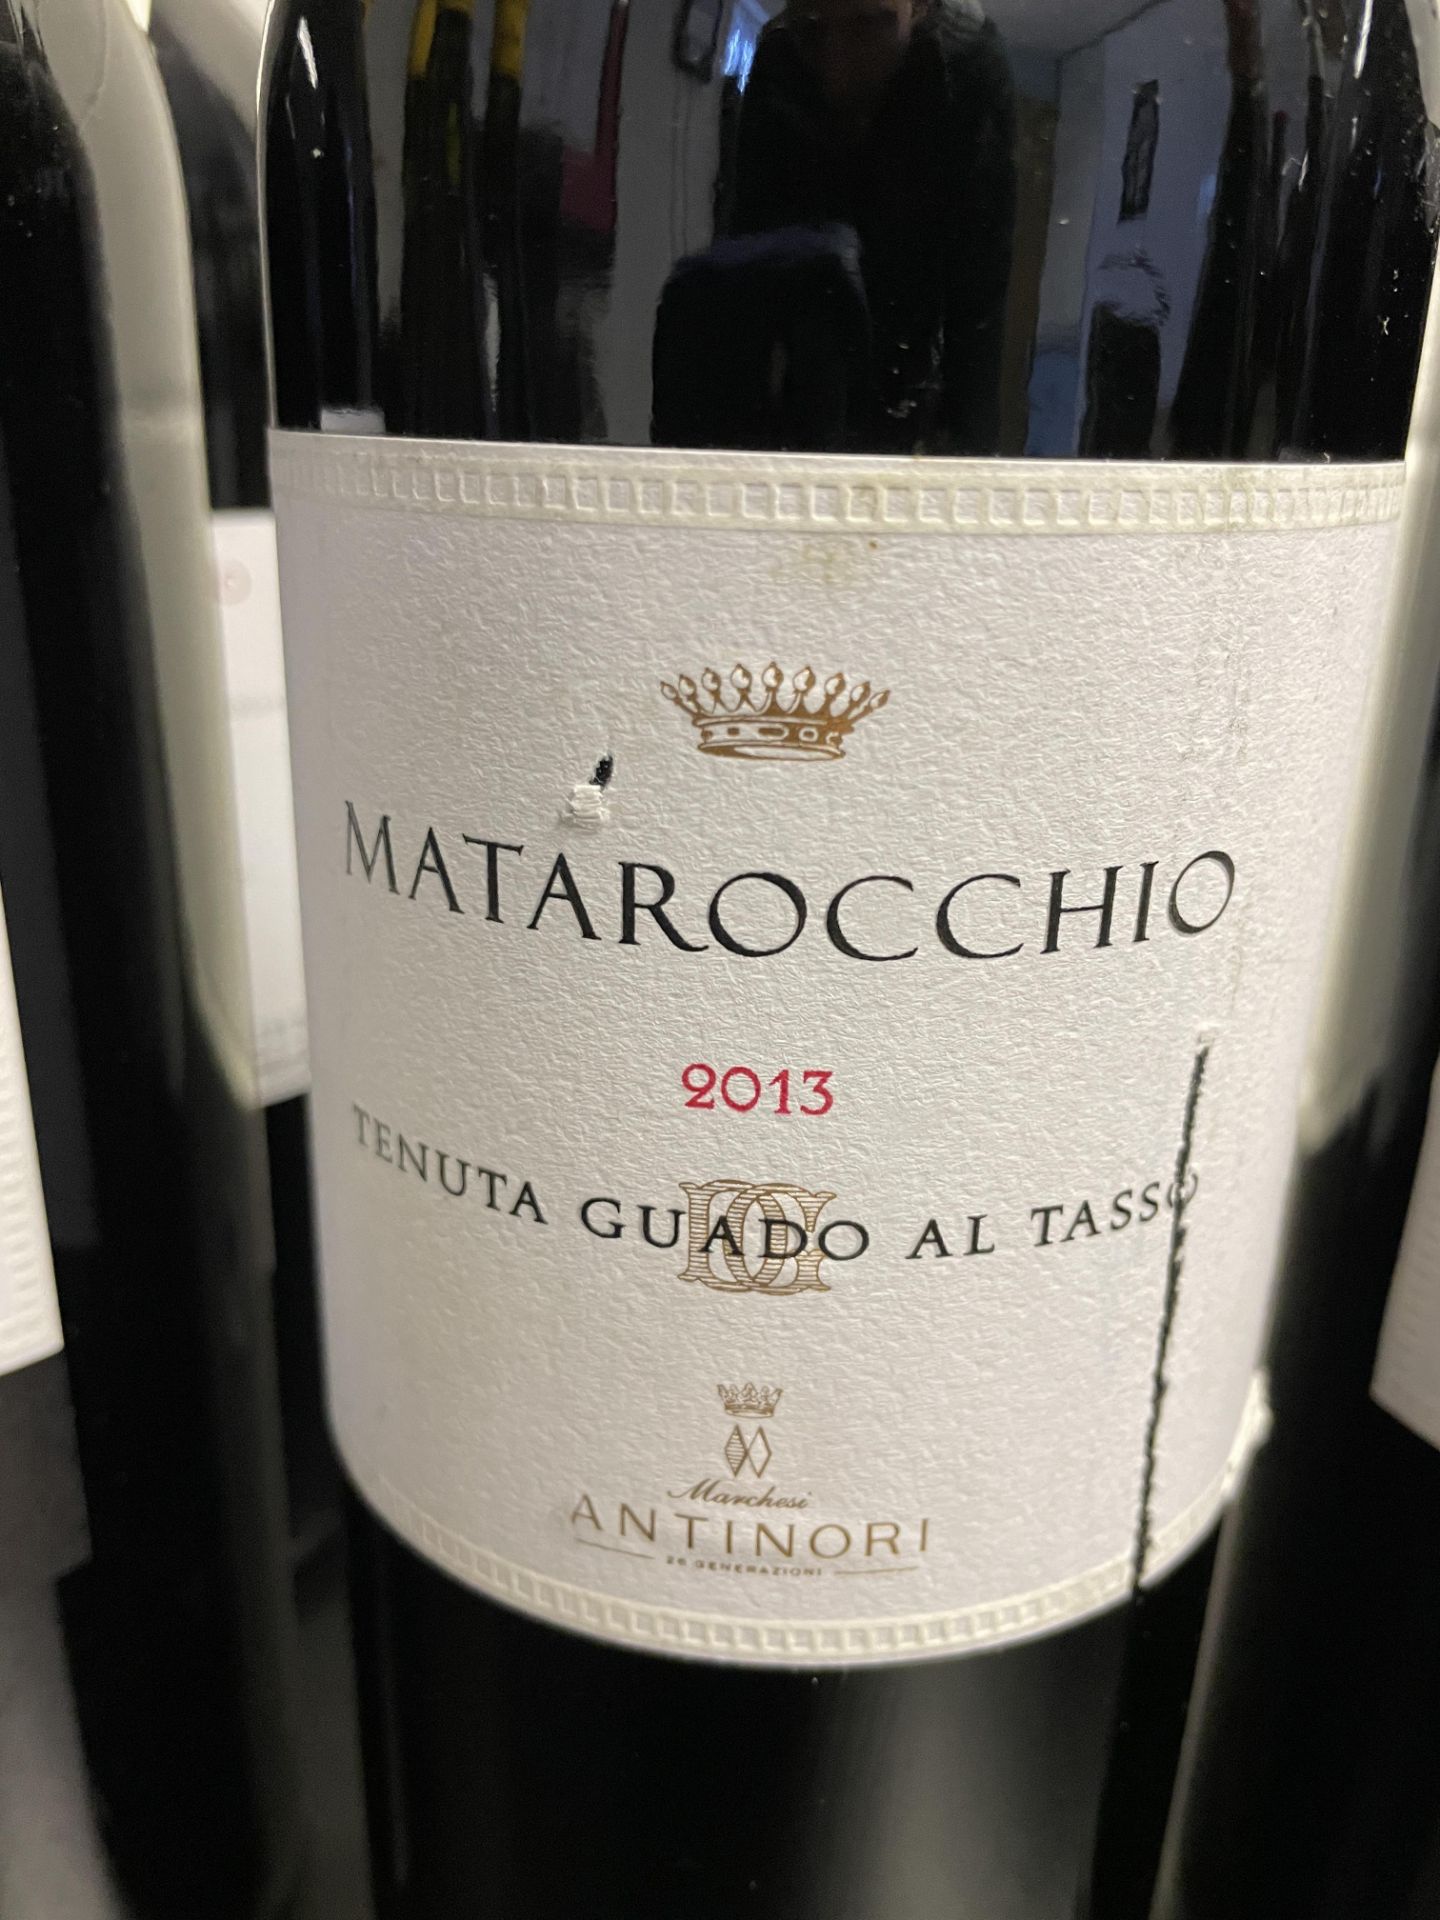 2 x Bottles of 2013 Marchesi Antinori Tenuta Guado Al Tasso Matarocchio Bolgheri Red Wine - RRP £760 - Image 3 of 12